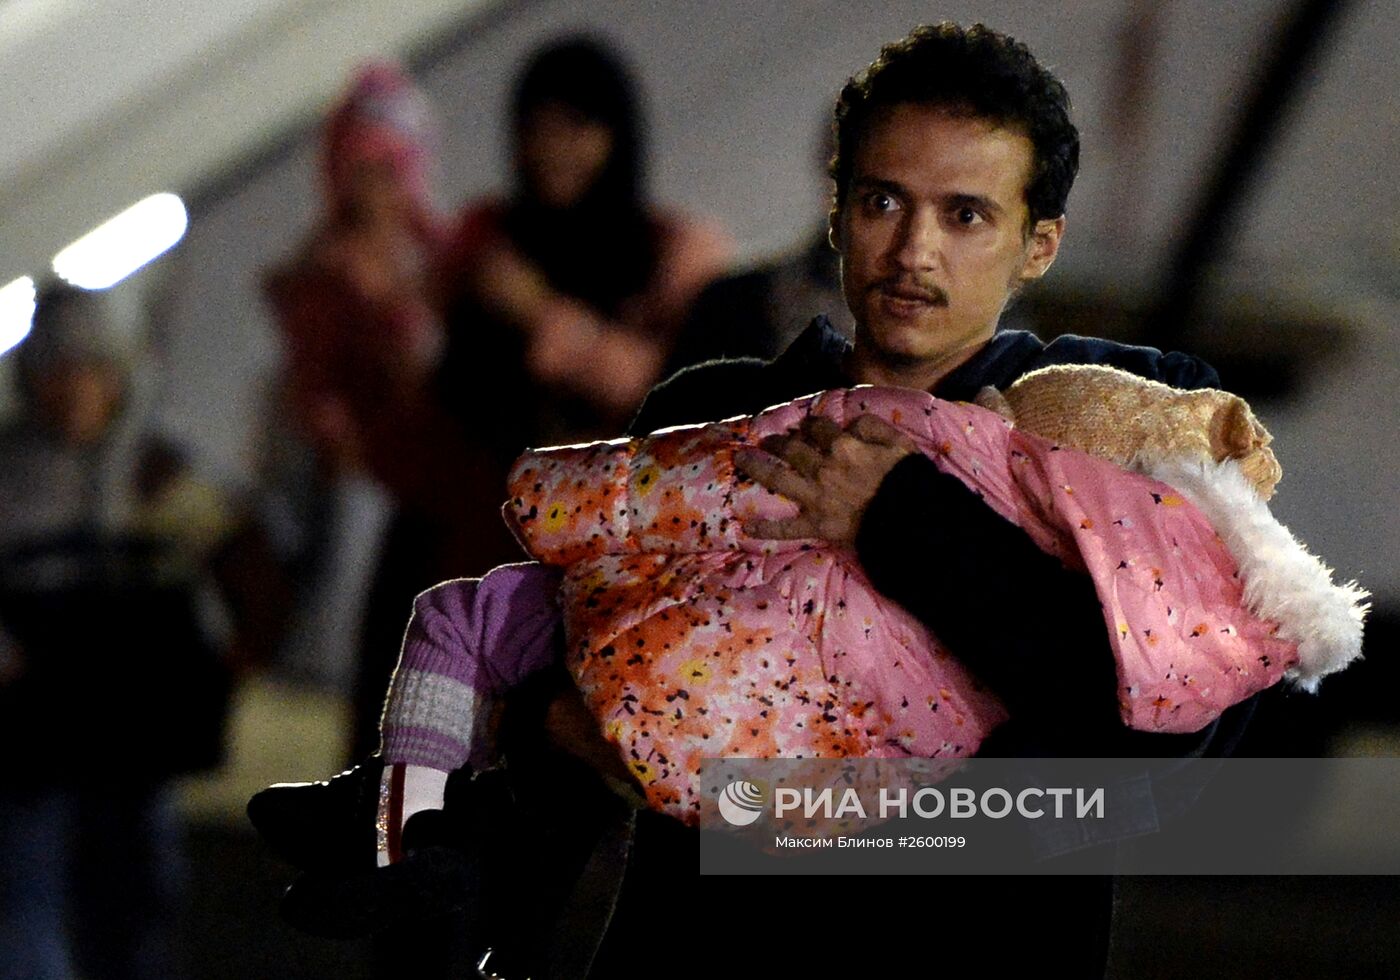 Самолет с гражданами России и других стран из Йемена прибыл в Подмосковье